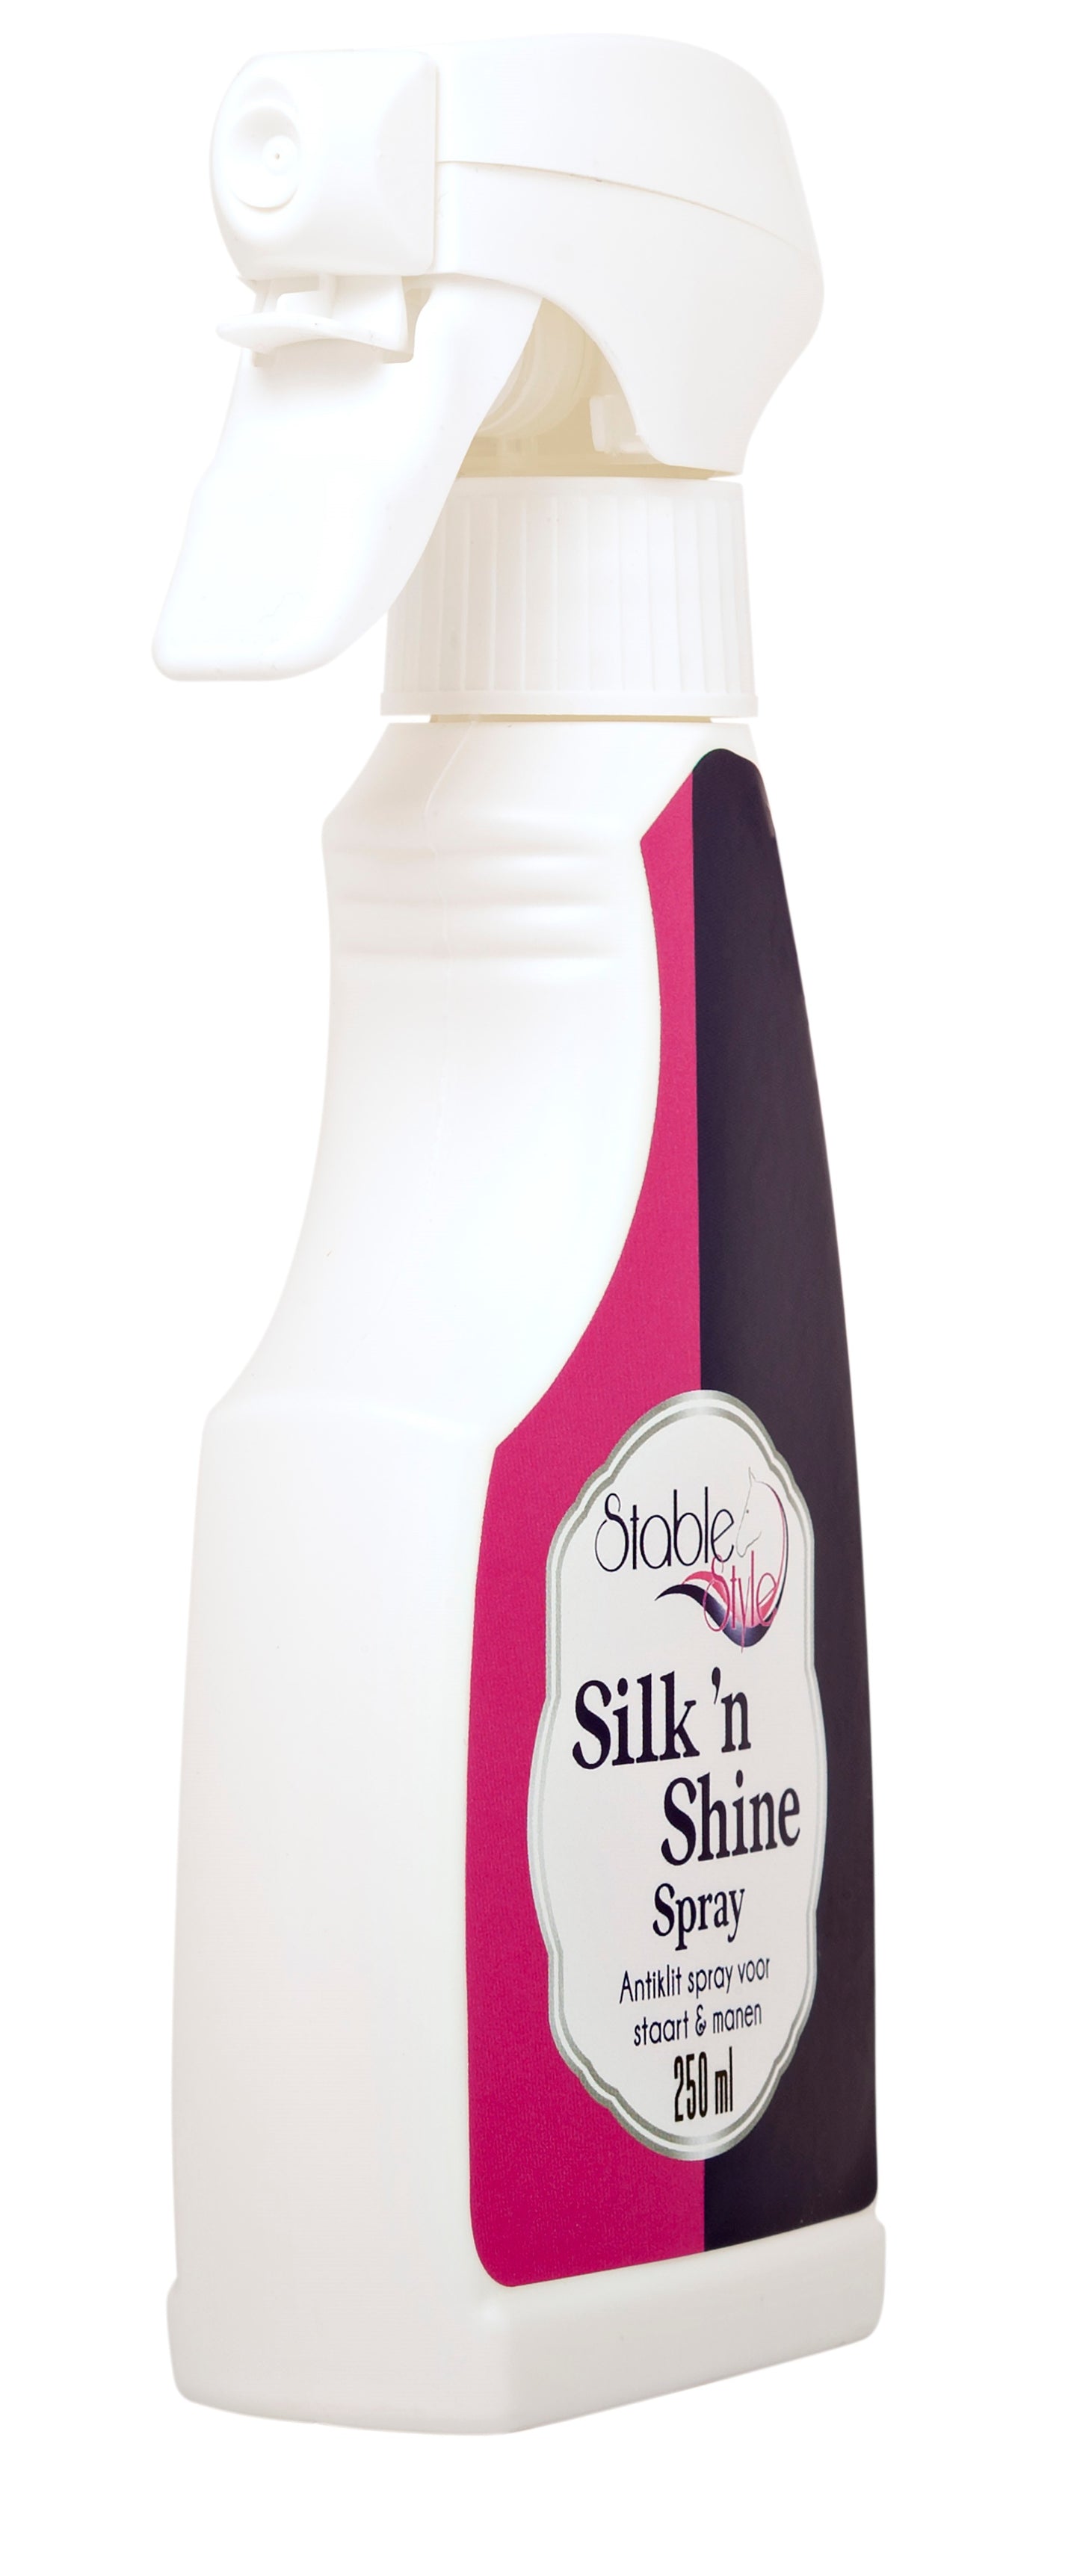 Silk 'n Shine spray